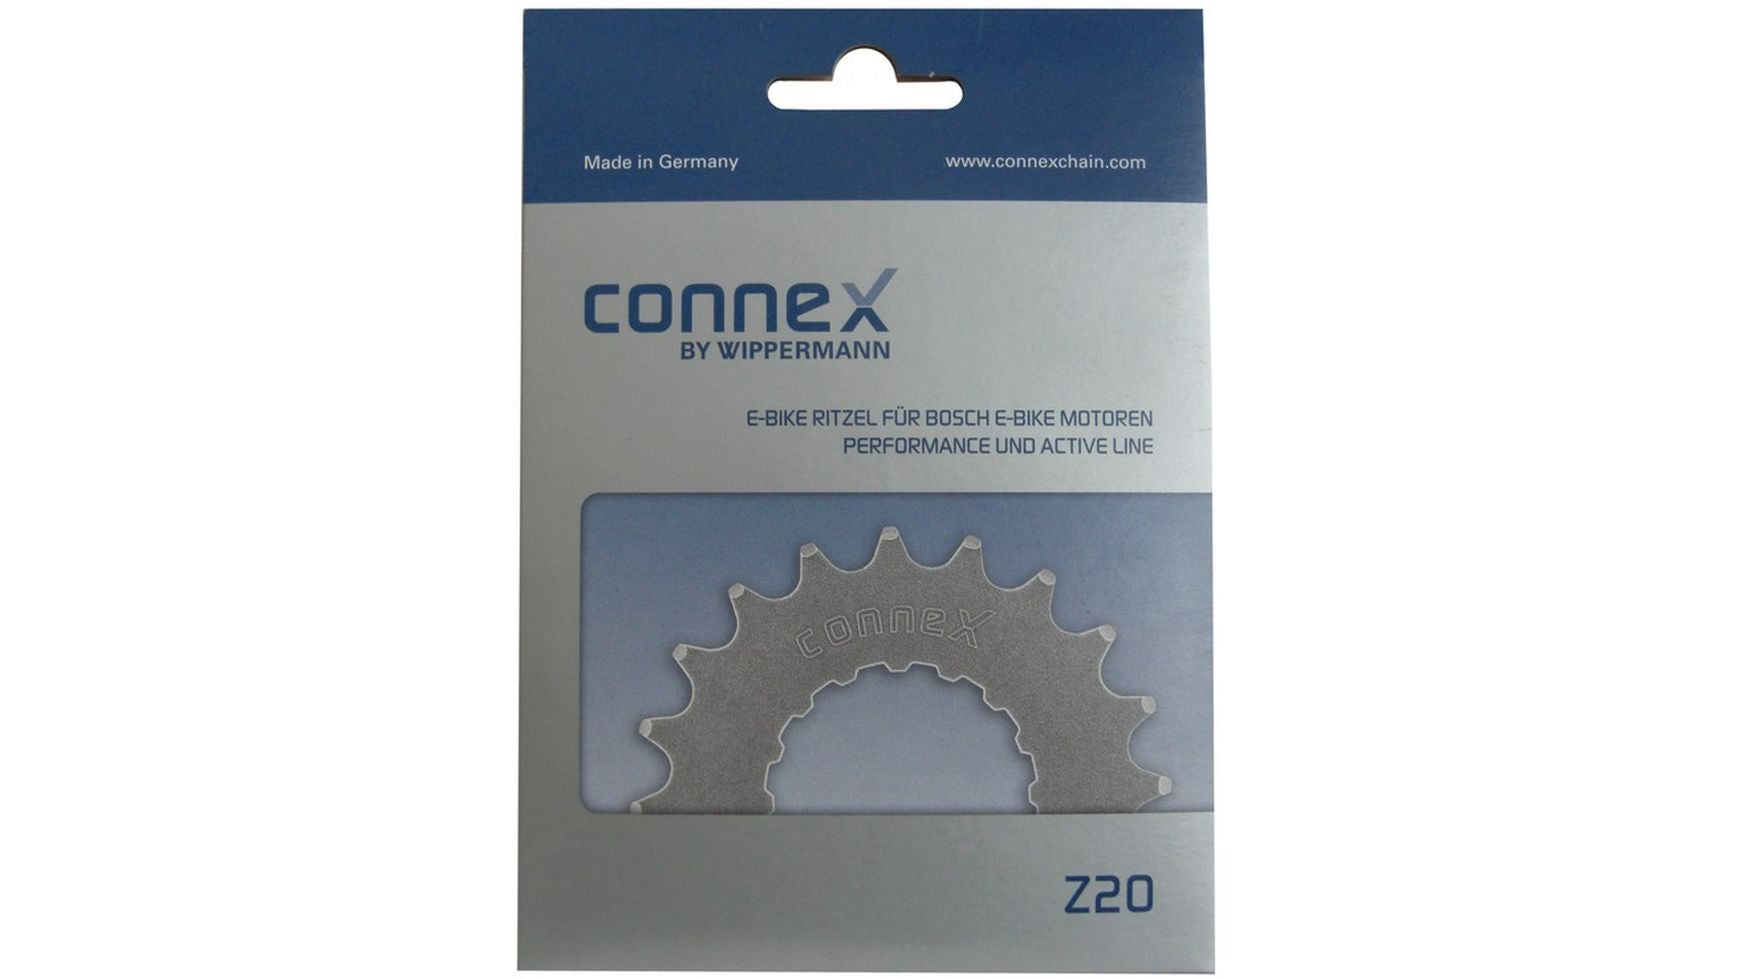 Connex 15 Zähne Ritzel Bosch von Connex